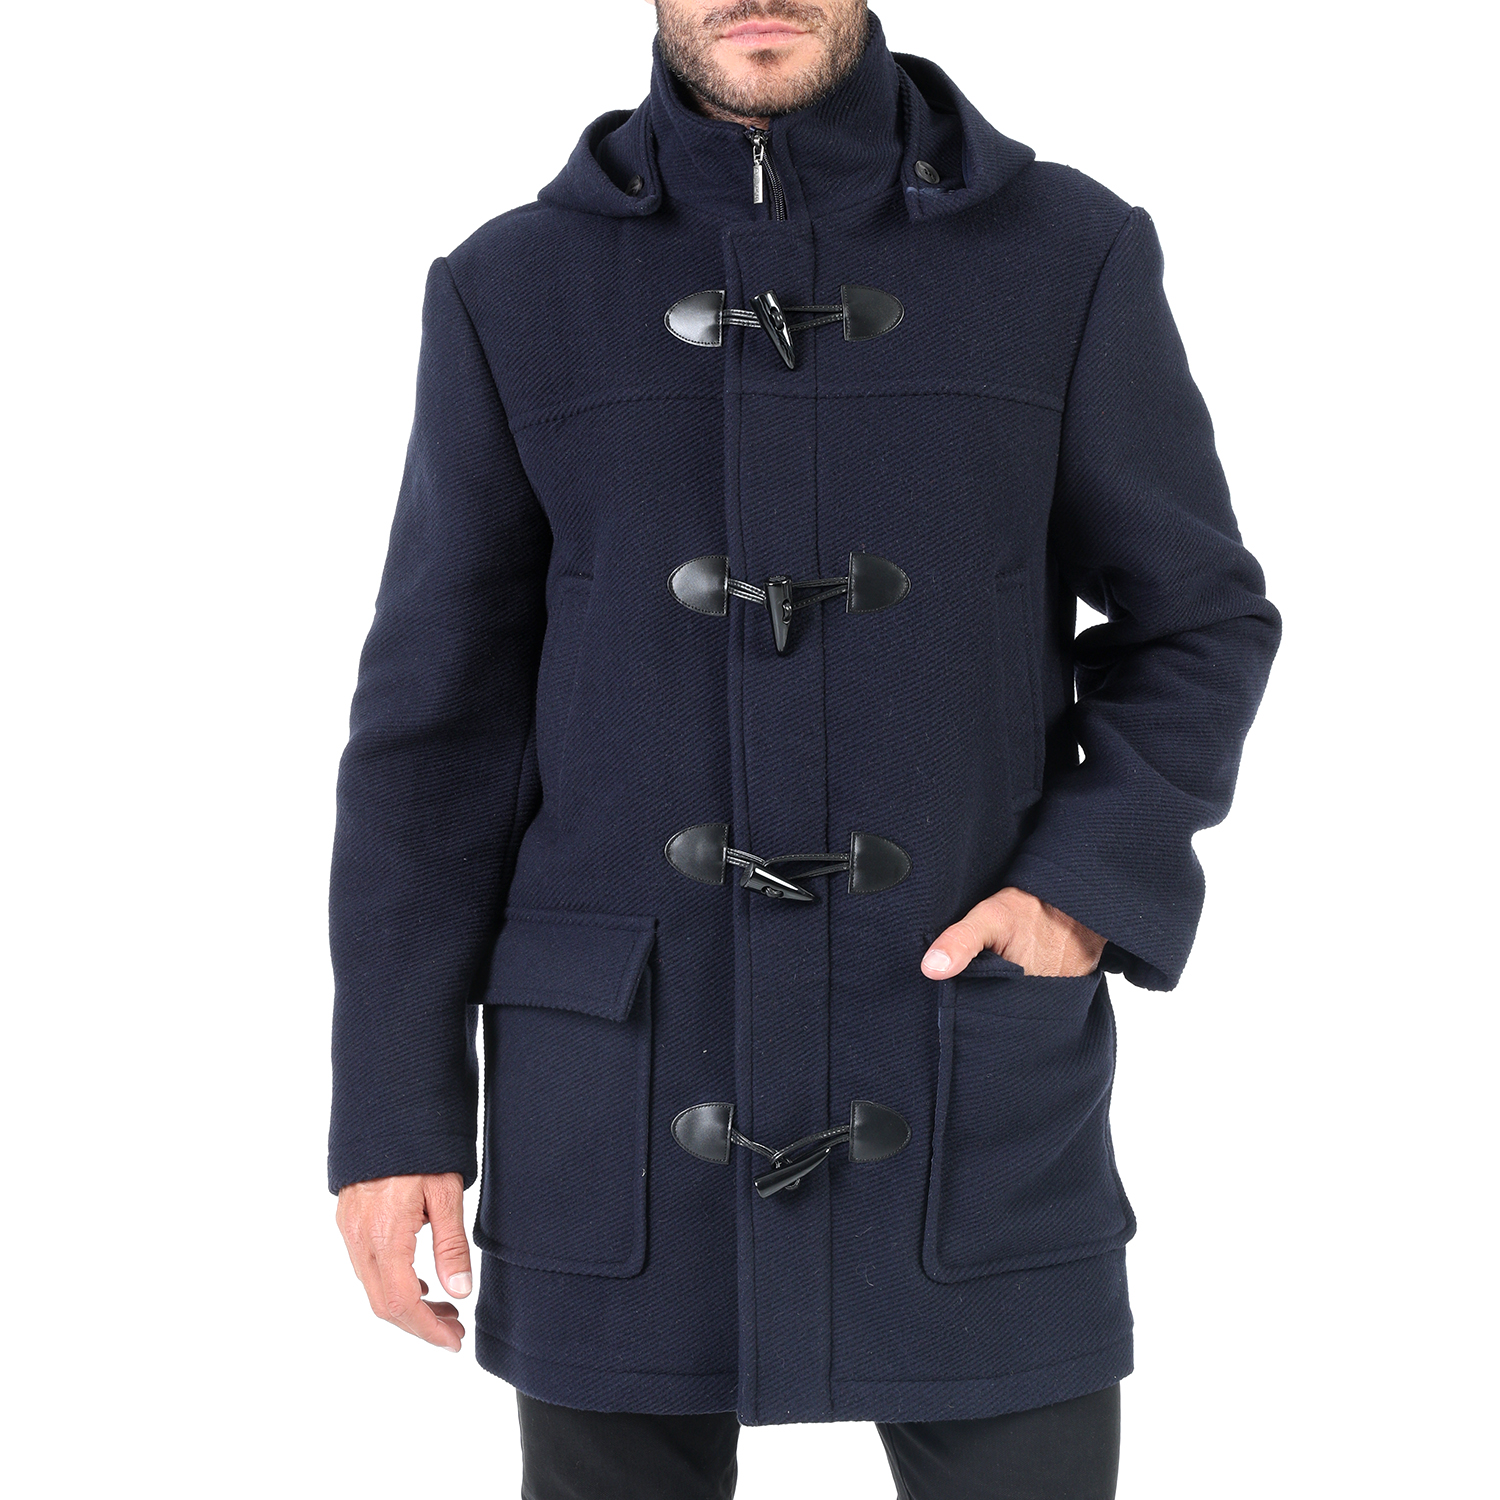 Ανδρικά/Ρούχα/Πανωφόρια/Παλτό DORS - Ανδρικό παλτό DORS μπλε